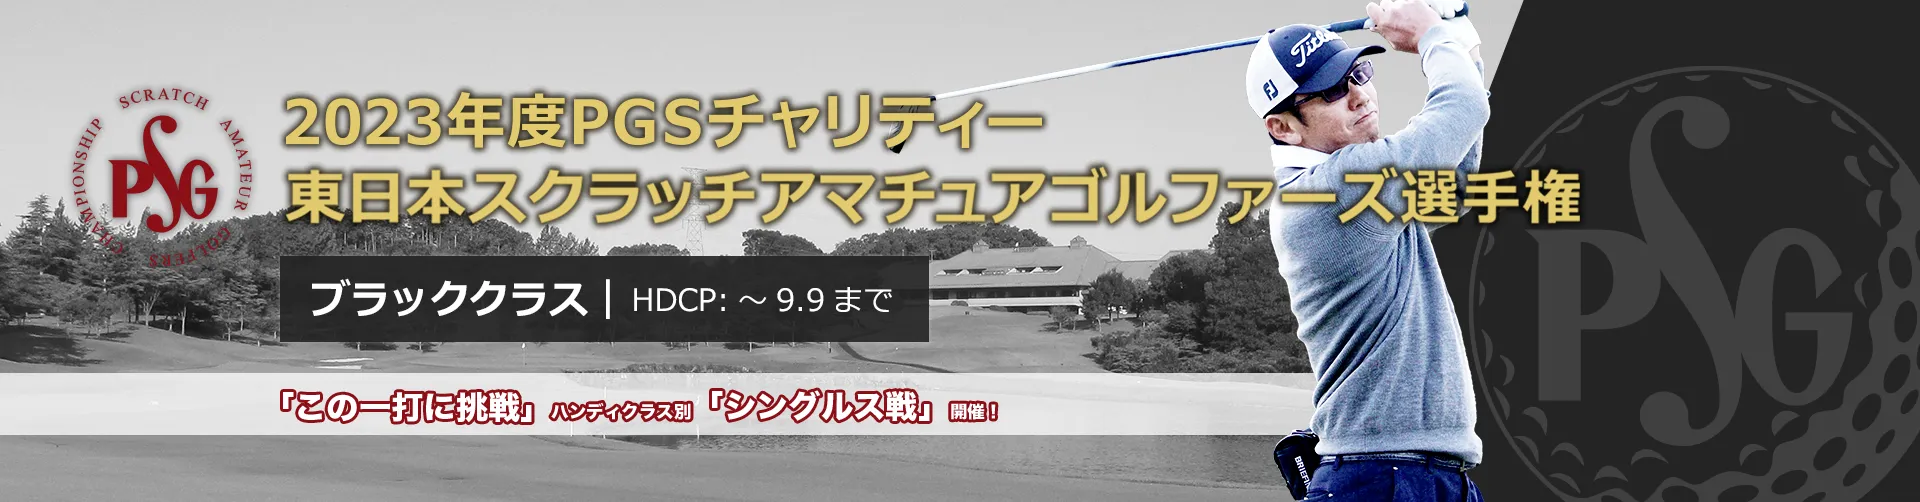 2023年度PGSチャリティー東日本スクラッチアマチュアゴルファーズ選手権_ブラッククラス|HDCP:~9.9まで